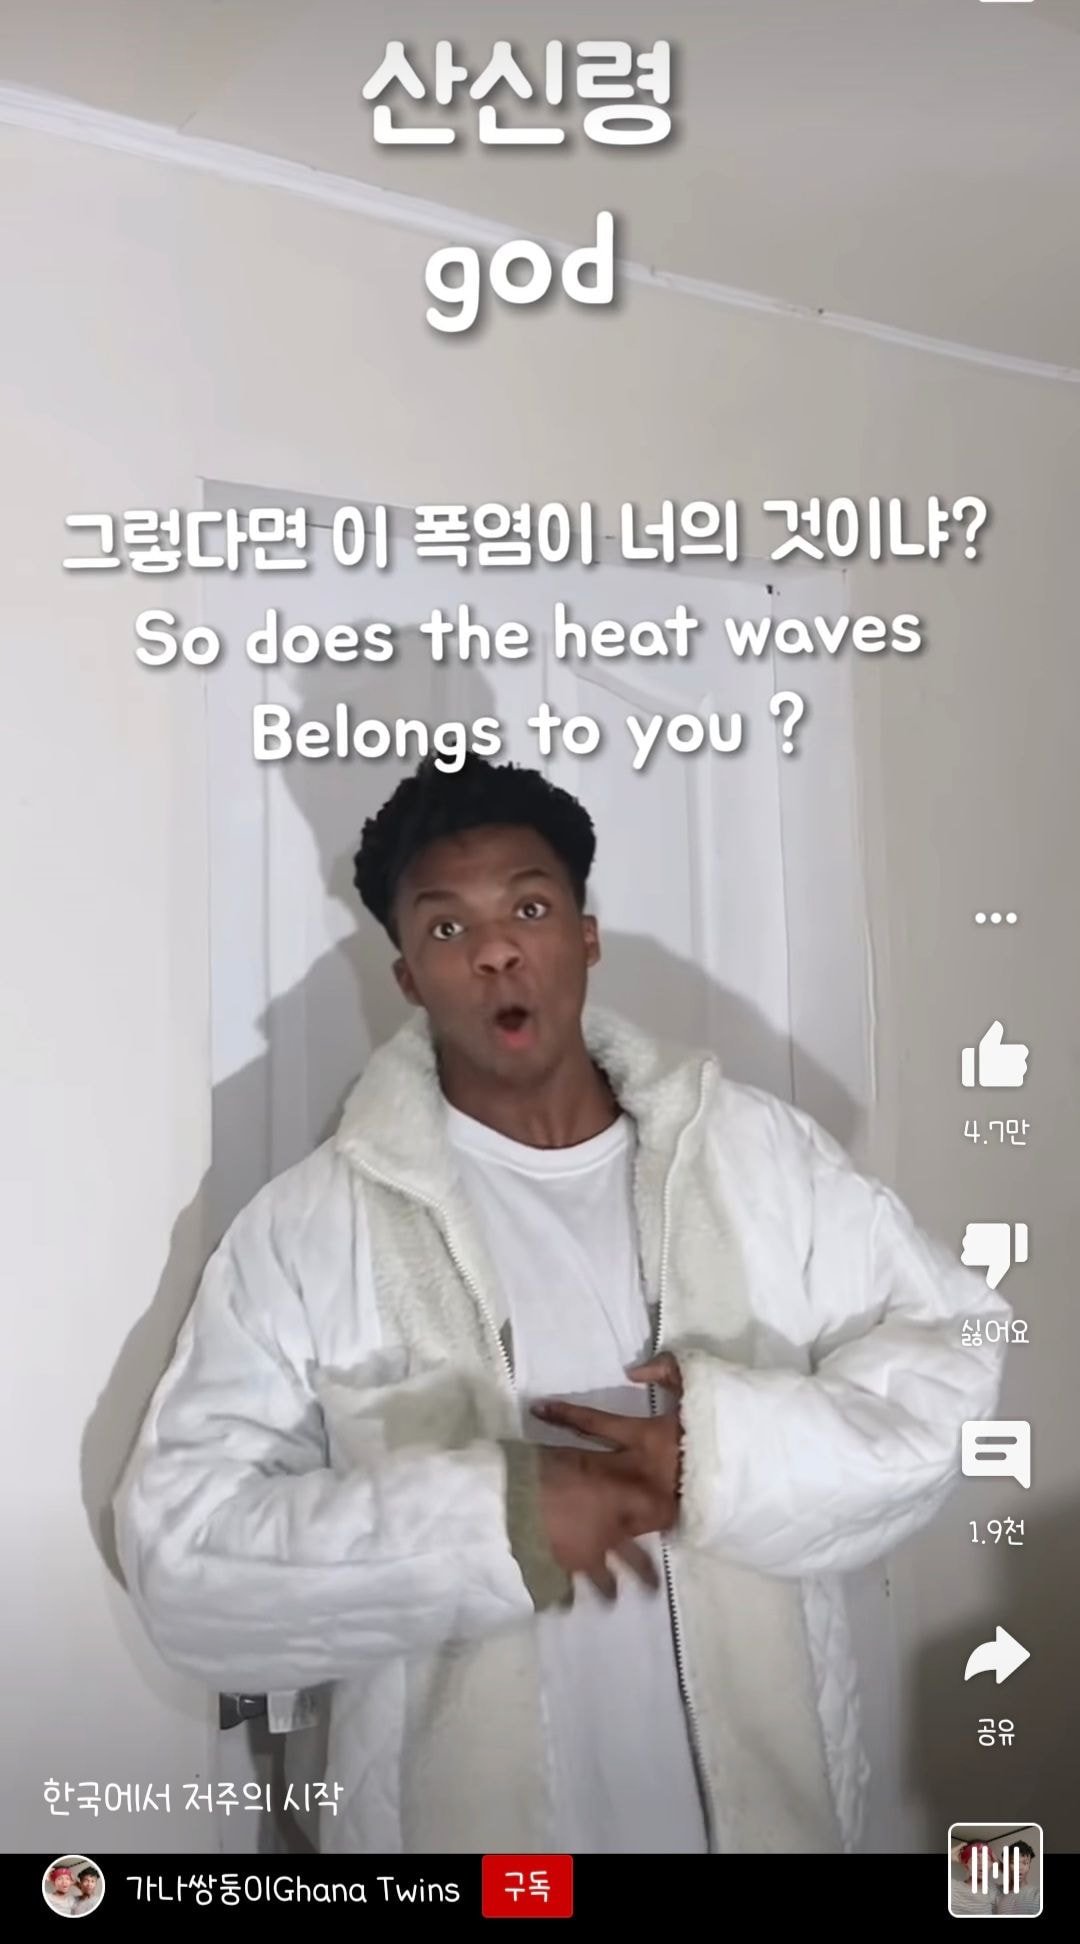 정직한 한국인